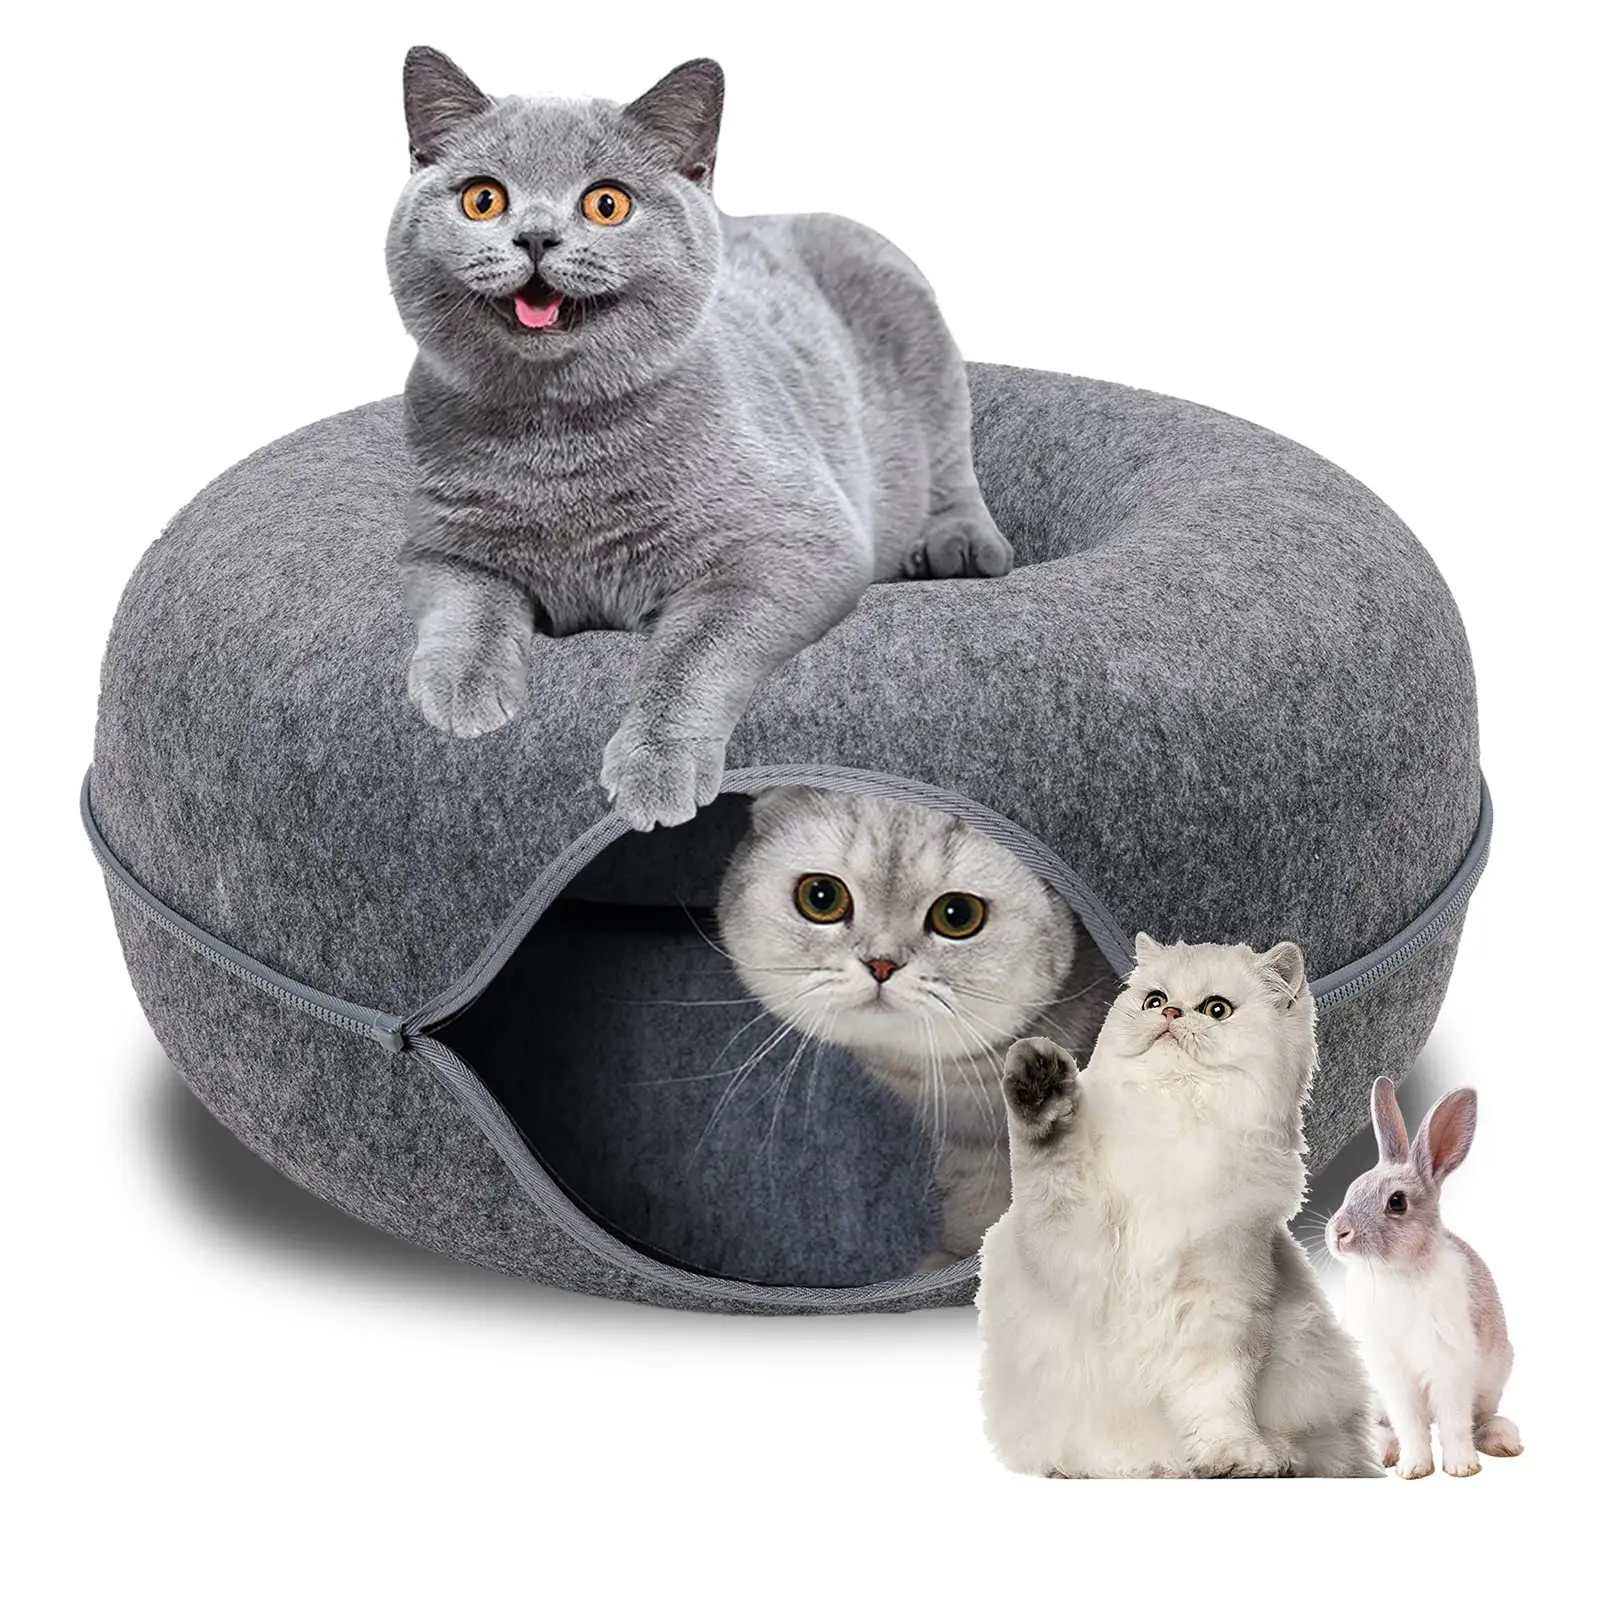 Grand Tube aire de jeux chaud moelleux en peluche chat chien Tunnel lit avec coussin lavable intérieur chat jouer Tunnel pour petits animaux de compagnie